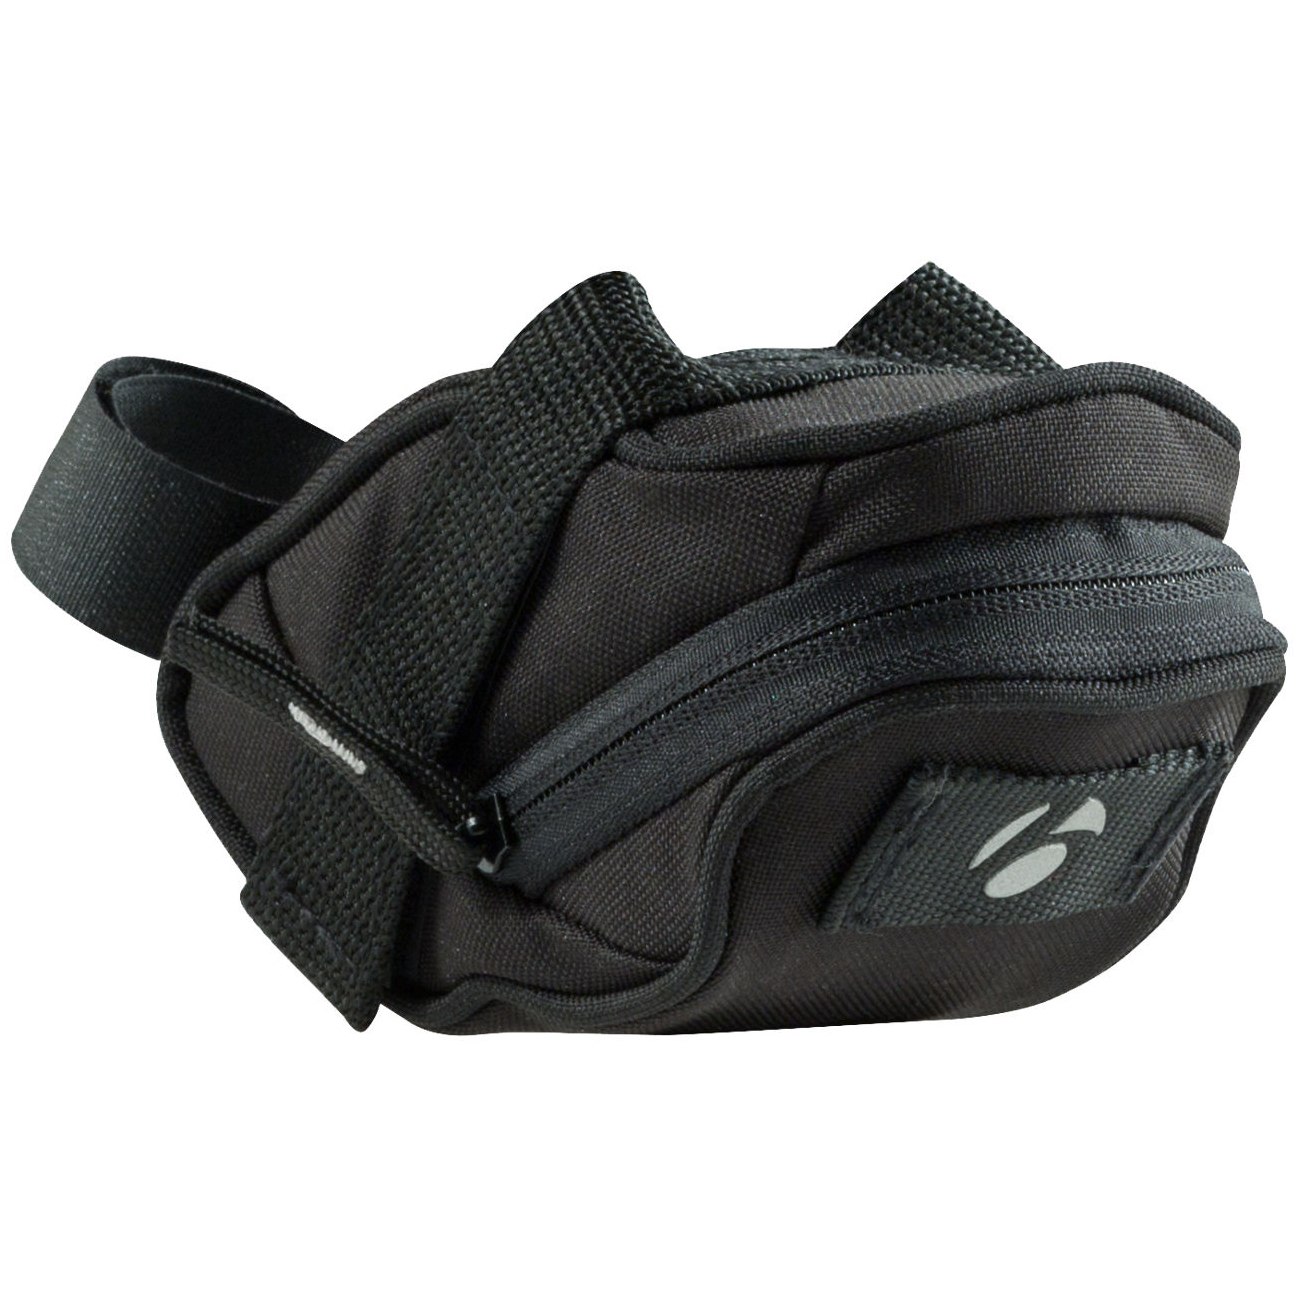 Produktbild von Bontrager Comp Small Seat Pack Satteltasche - black